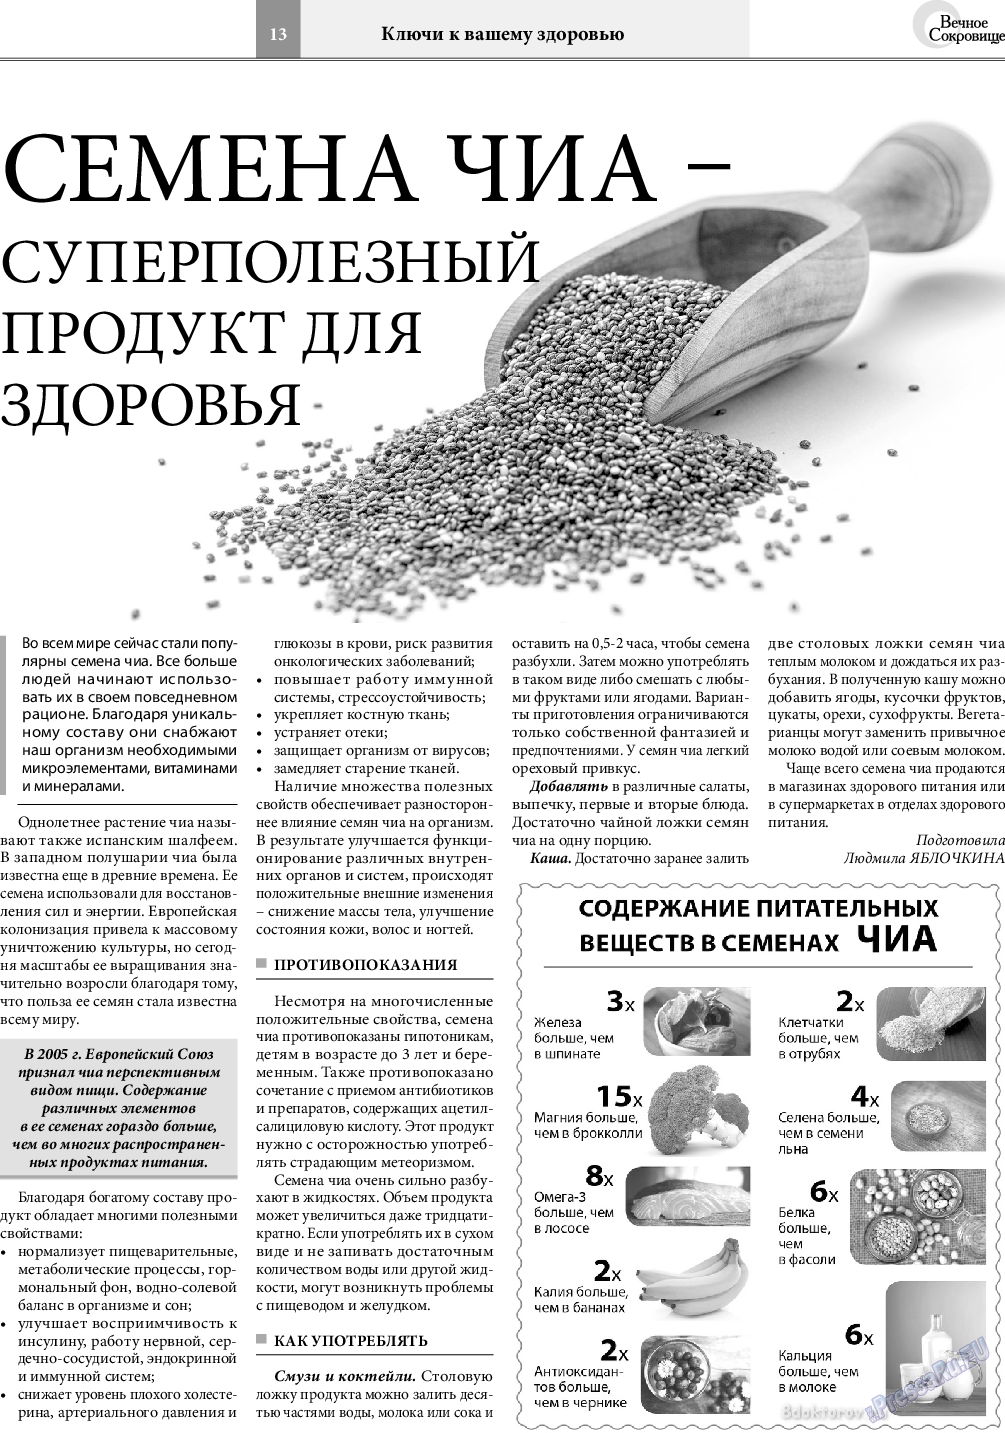 Вечное сокровище, газета. 2020 №4 стр.13